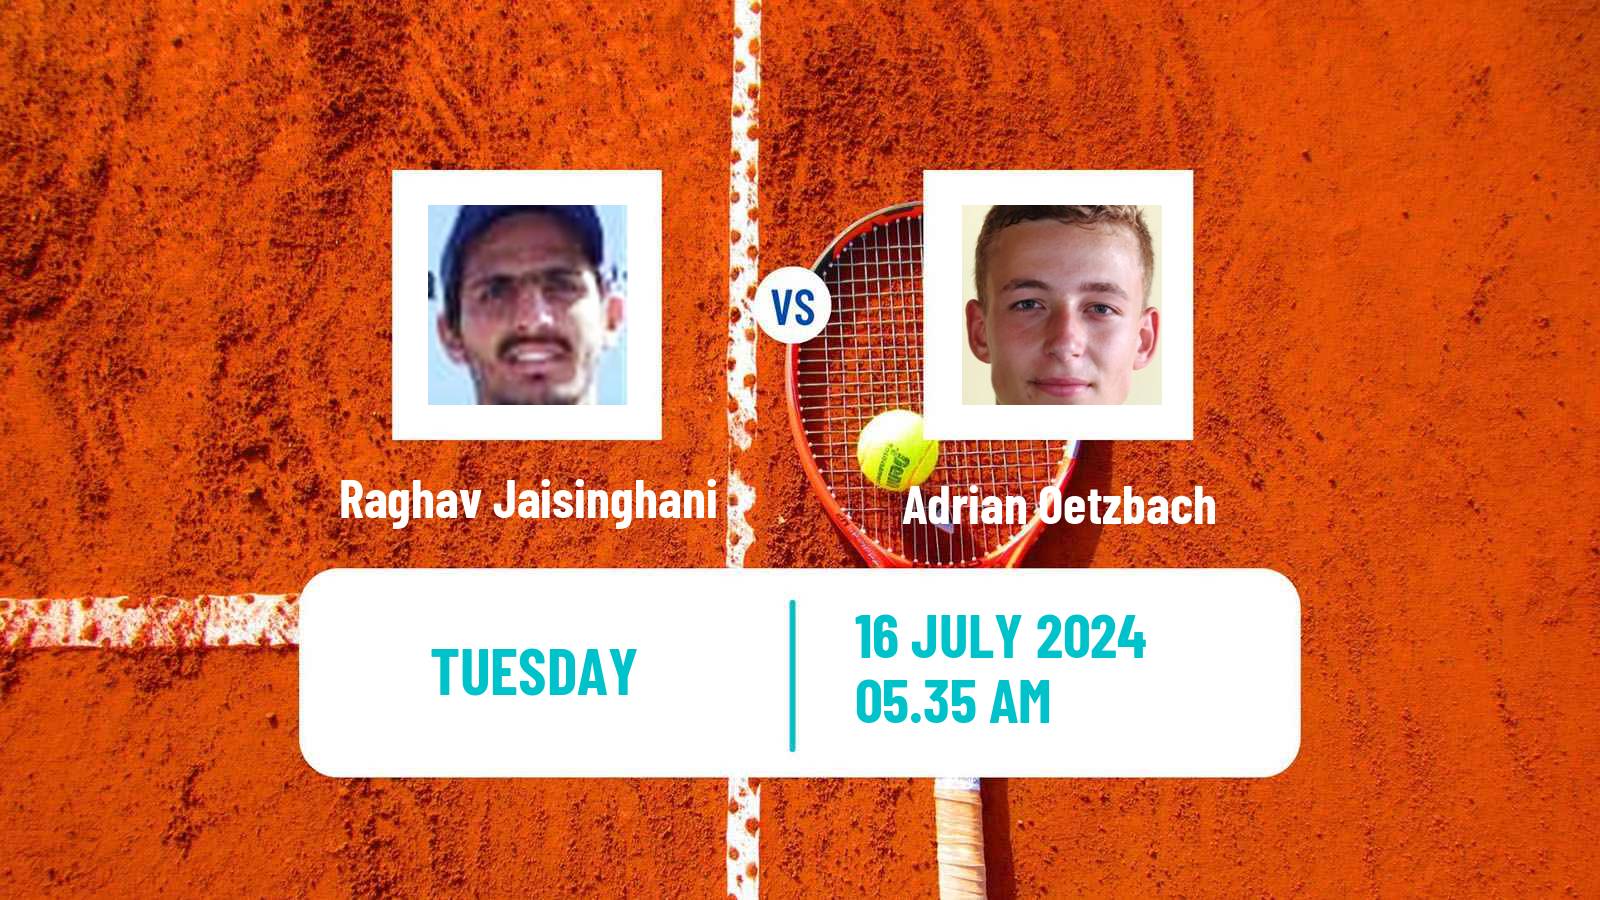 Tennis ITF M15 Uslar Men Raghav Jaisinghani - Adrian Oetzbach